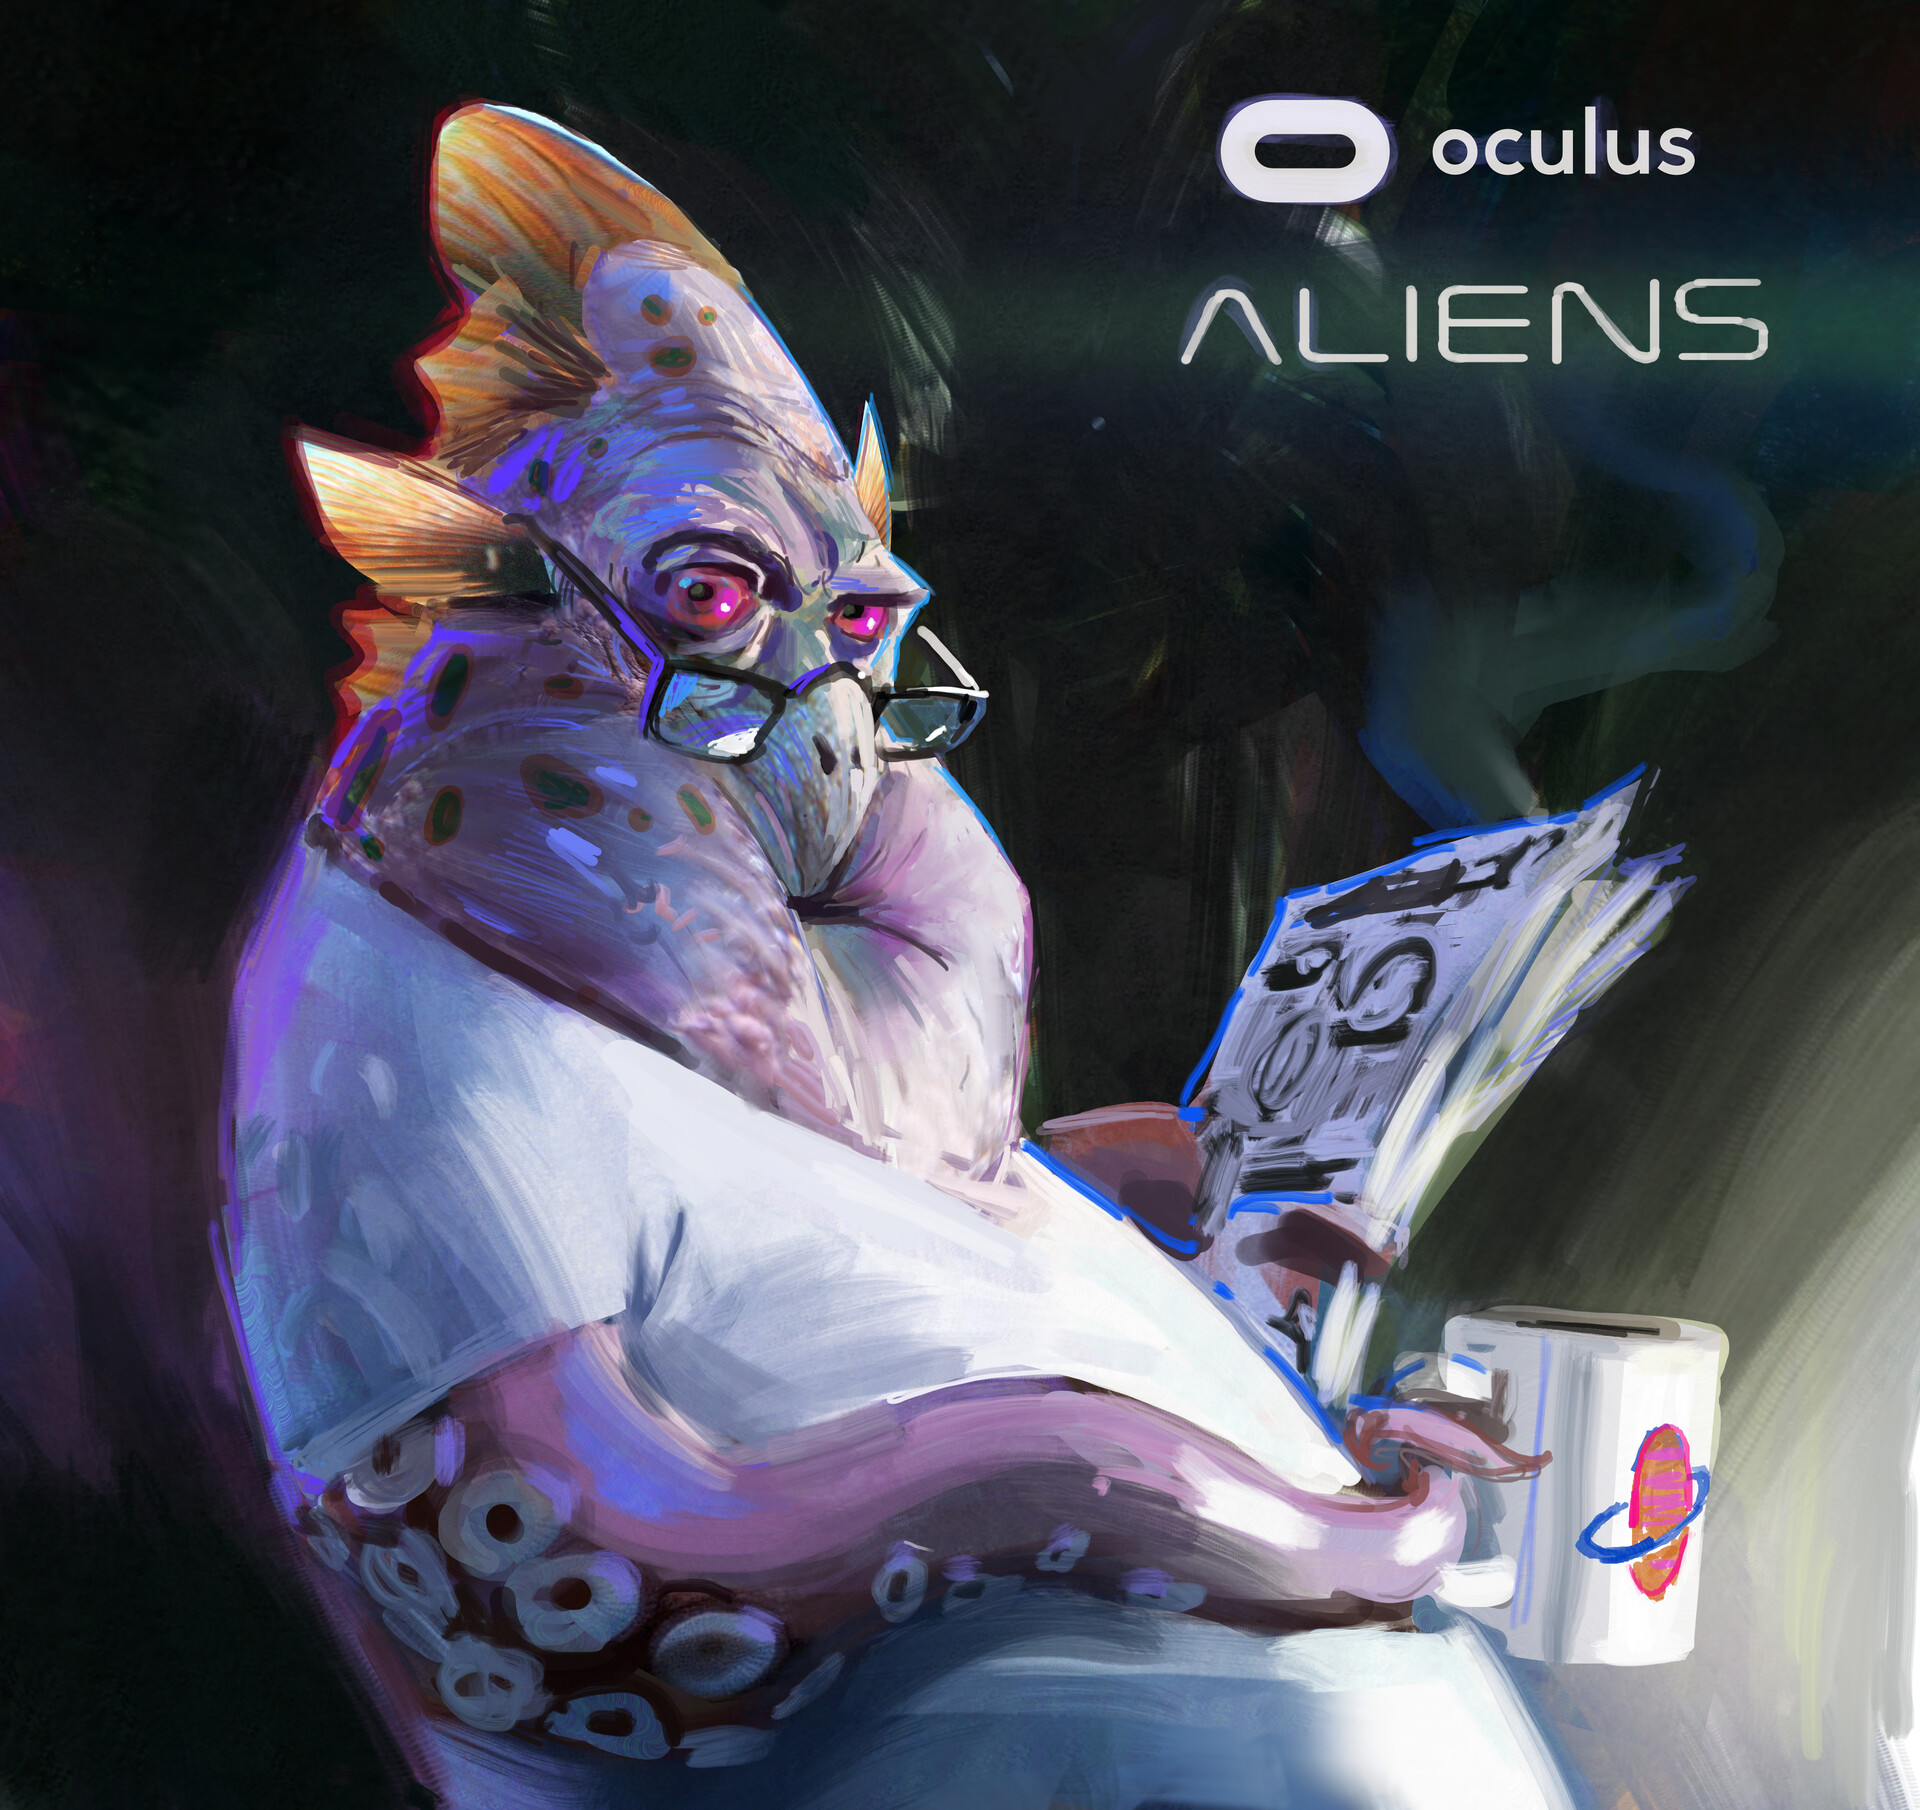 john-wallin-liberto-oculus-aliens-1.jpg